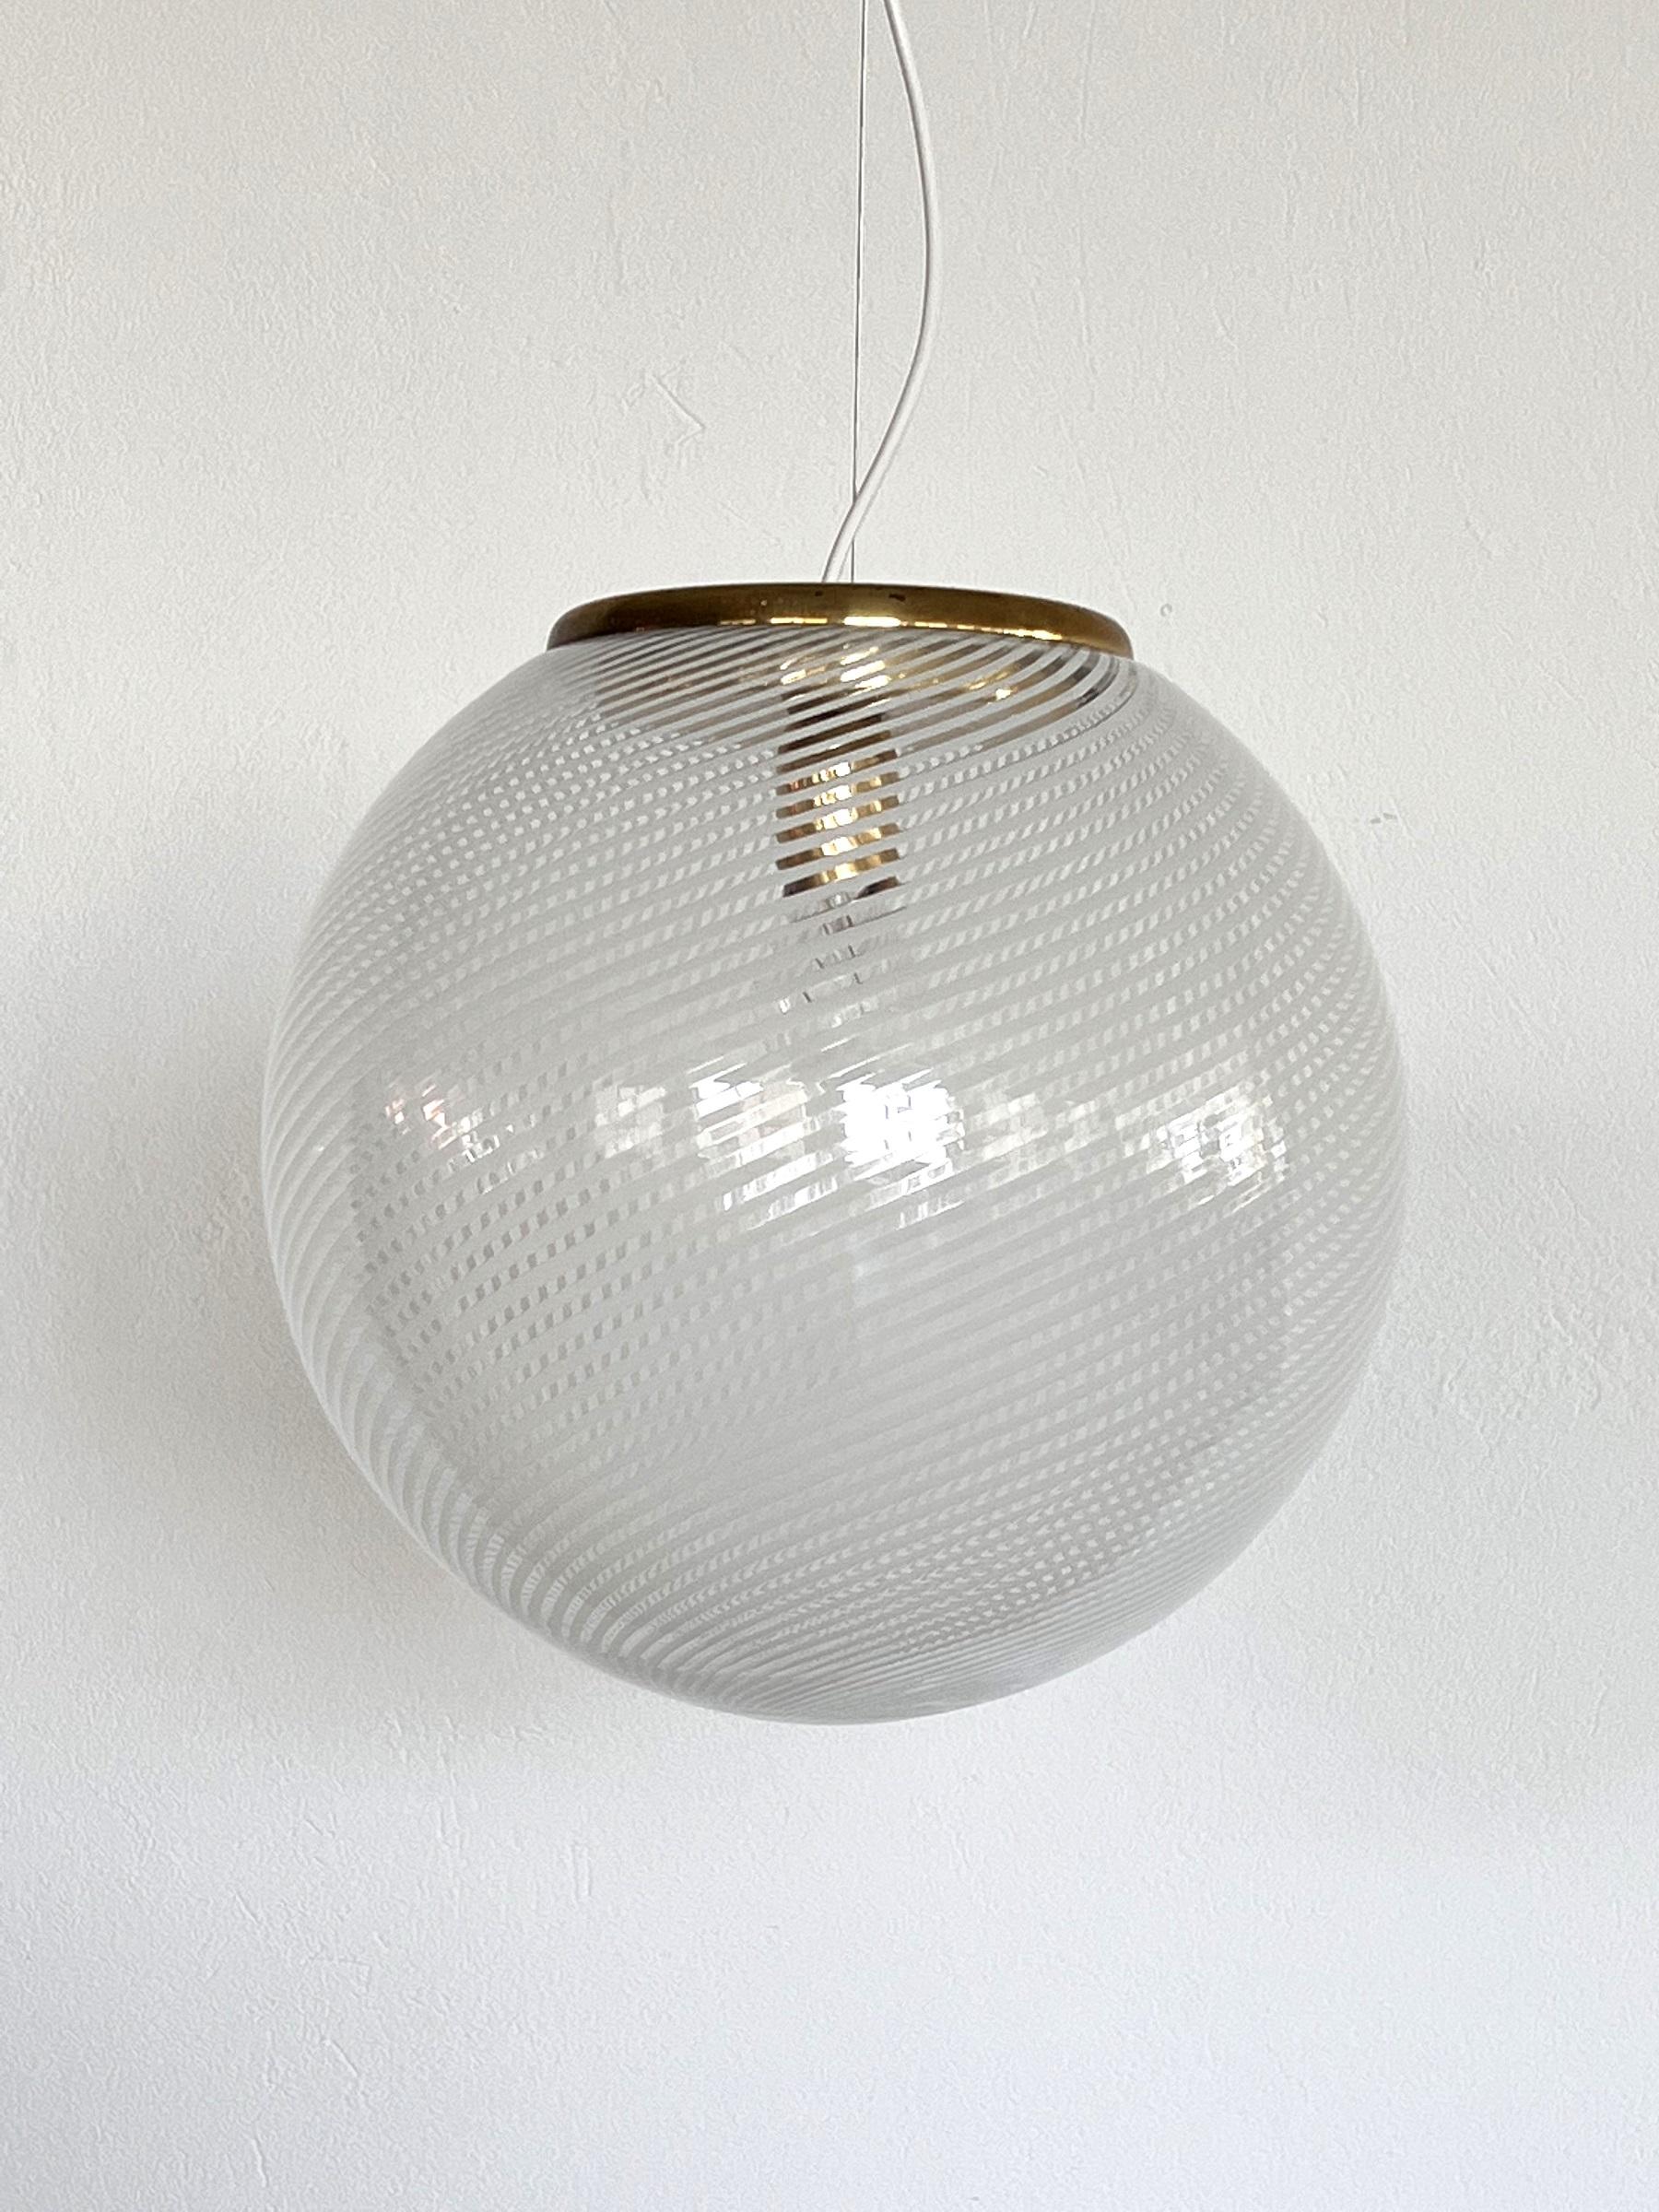 Superbe lampe suspendue avec un grand globe en verre Murano et des détails en laiton.
Fabriqué en Italie dans les années 1970.
Ce magnifique globe en verre présente des rayures blanches brillantes sur un fond de verre transparent. 
Lorsqu'il est